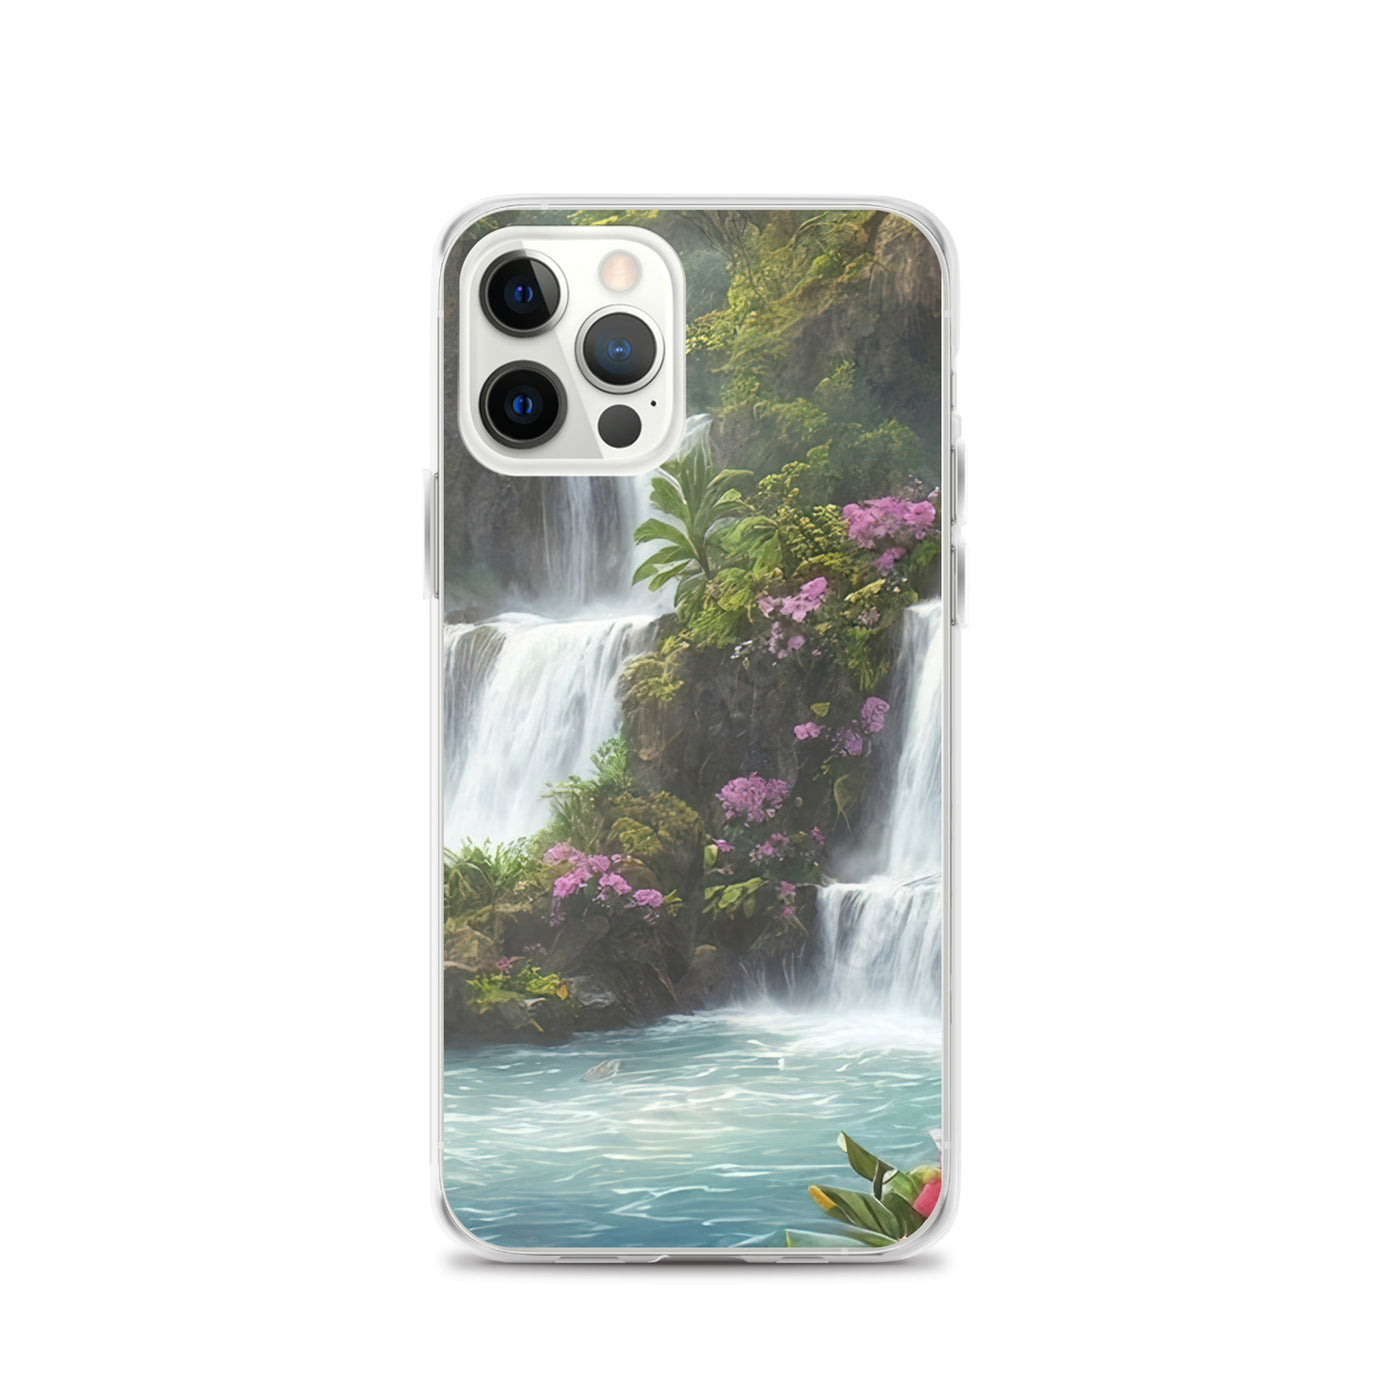 Wasserfall im Wald und Blumen - Schöne Malerei - iPhone Schutzhülle (durchsichtig) camping xxx iPhone 12 Pro